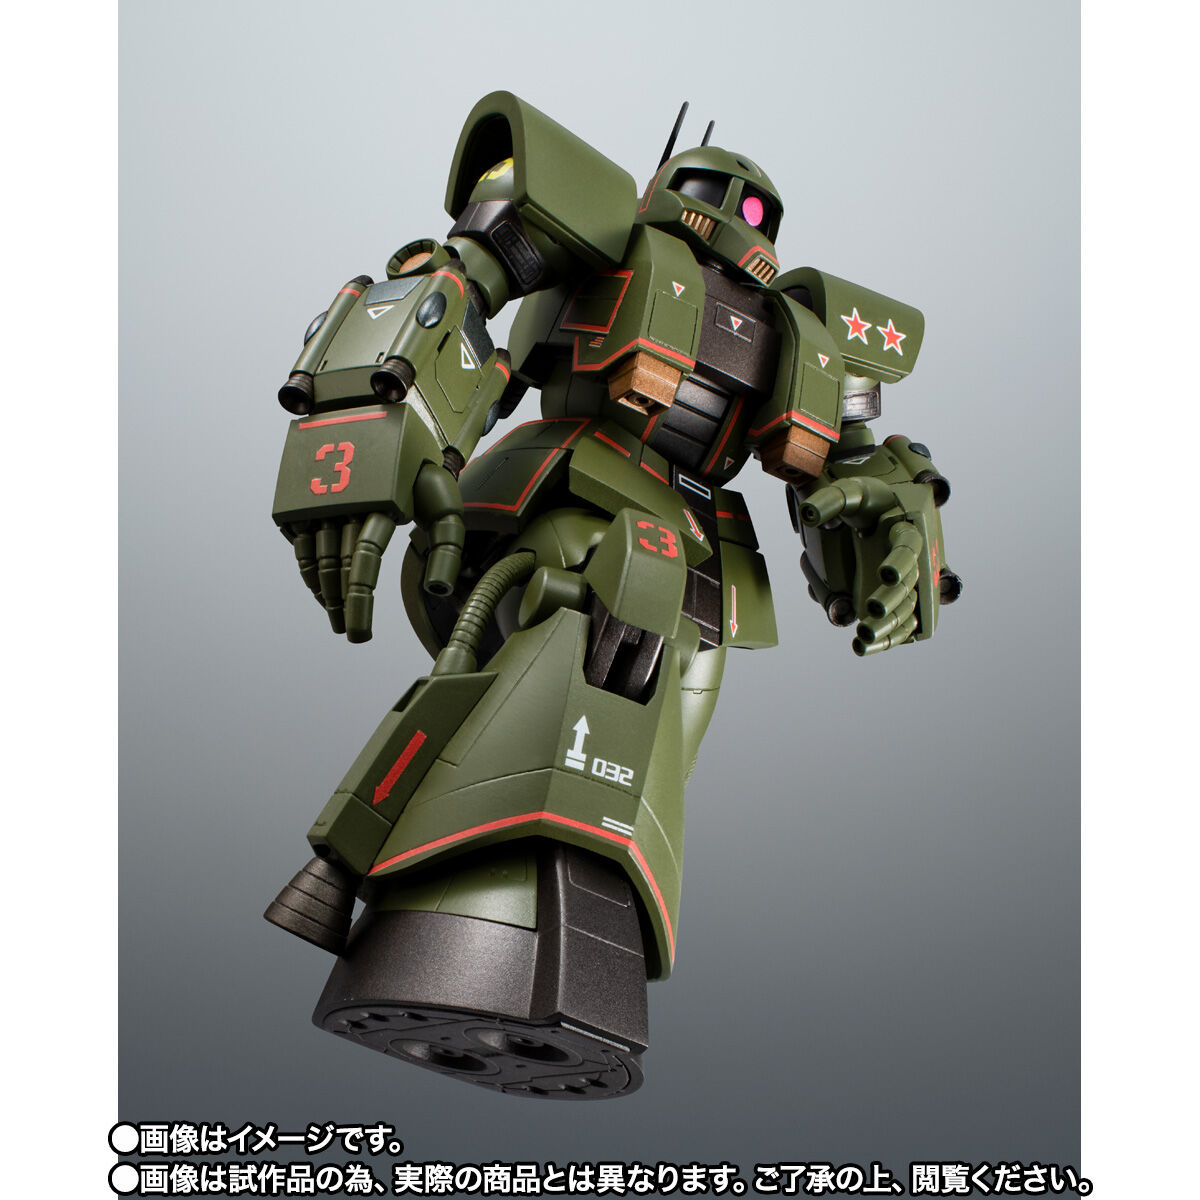 【限定販売】ROBOT魂〈SIDE MS〉『MS-06Z サイコミュ試験用ザク ver. A.N.I.M.E.』機動戦士ガンダム MSV 可動フィギュア-005